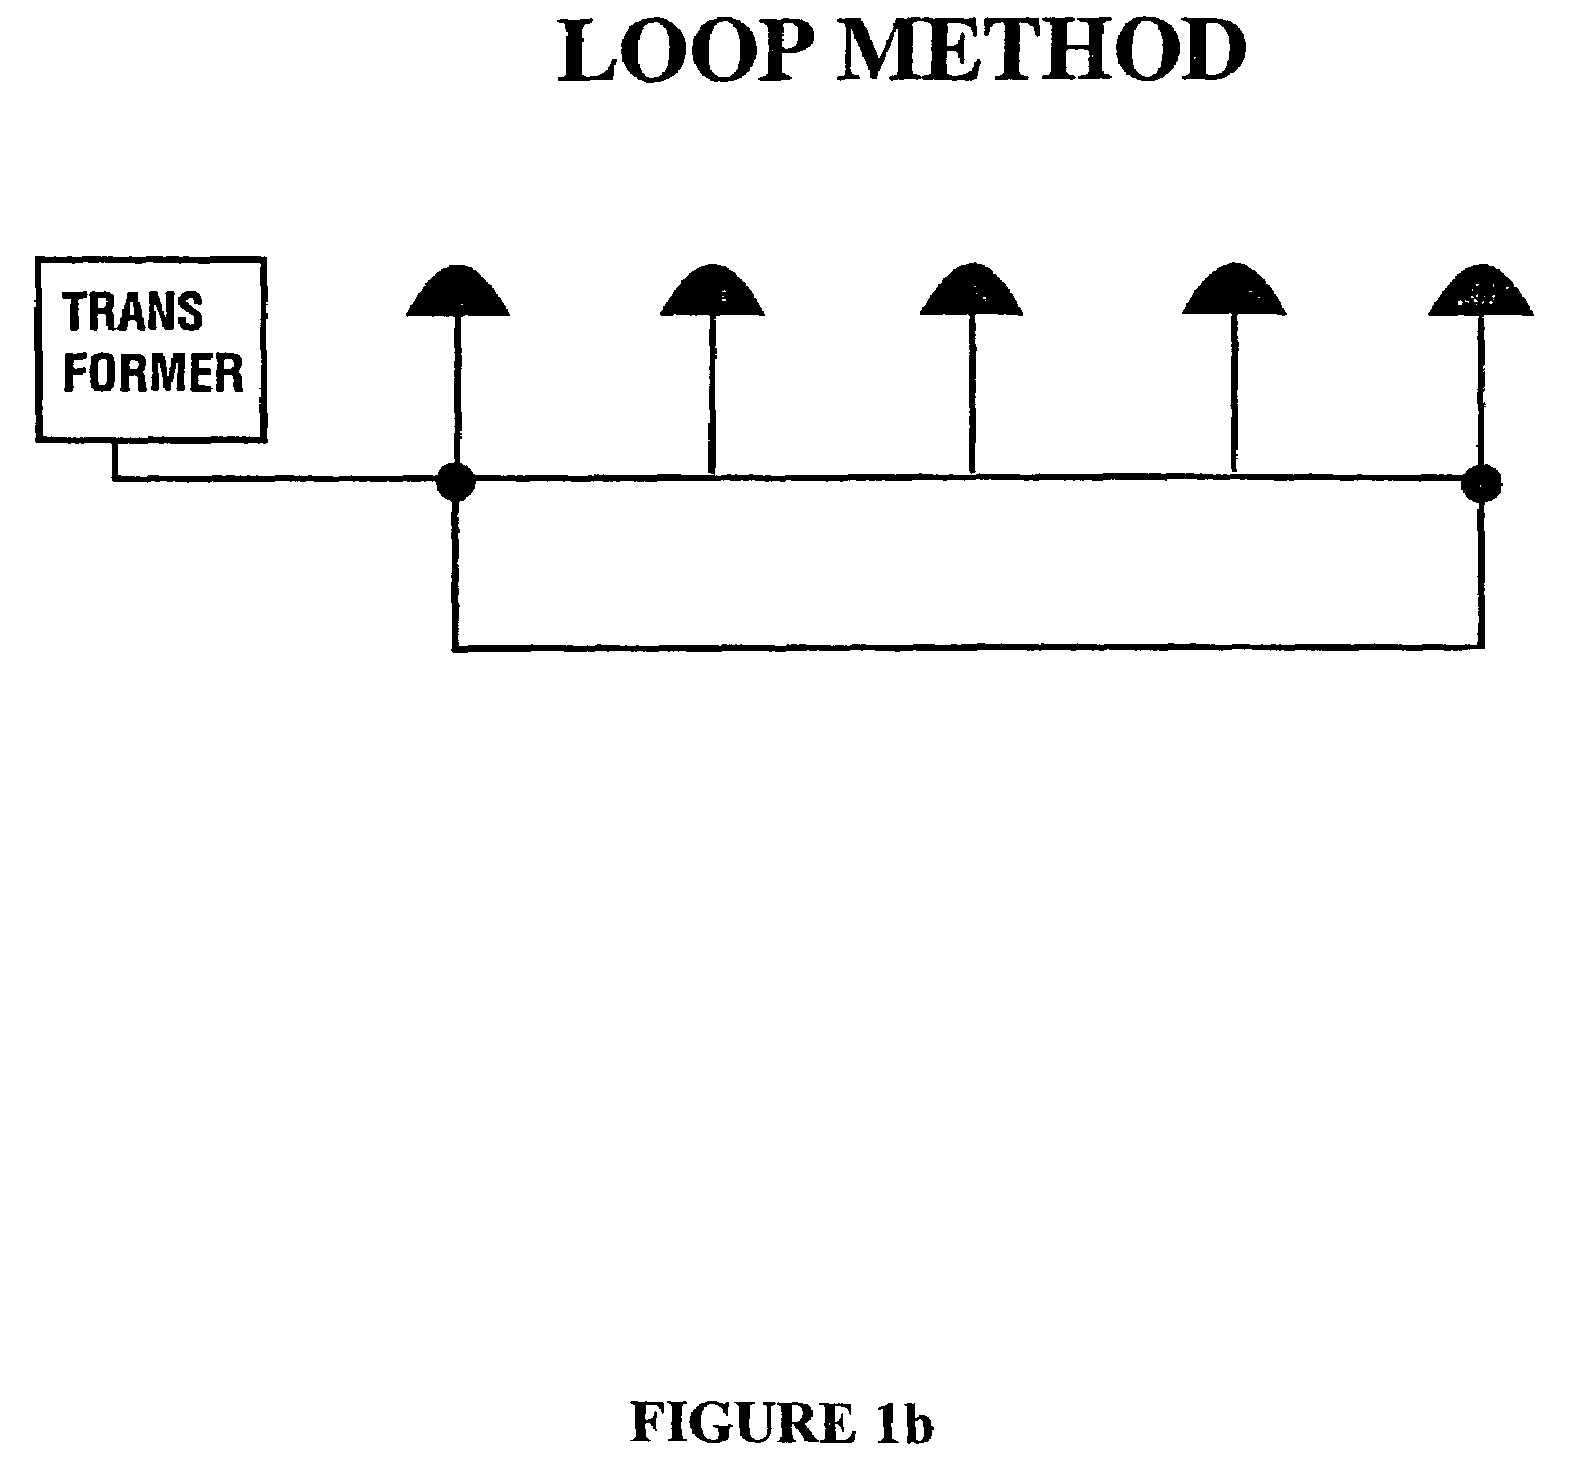 Method of wiring lighting fixtures to achieve uniform voltage drop